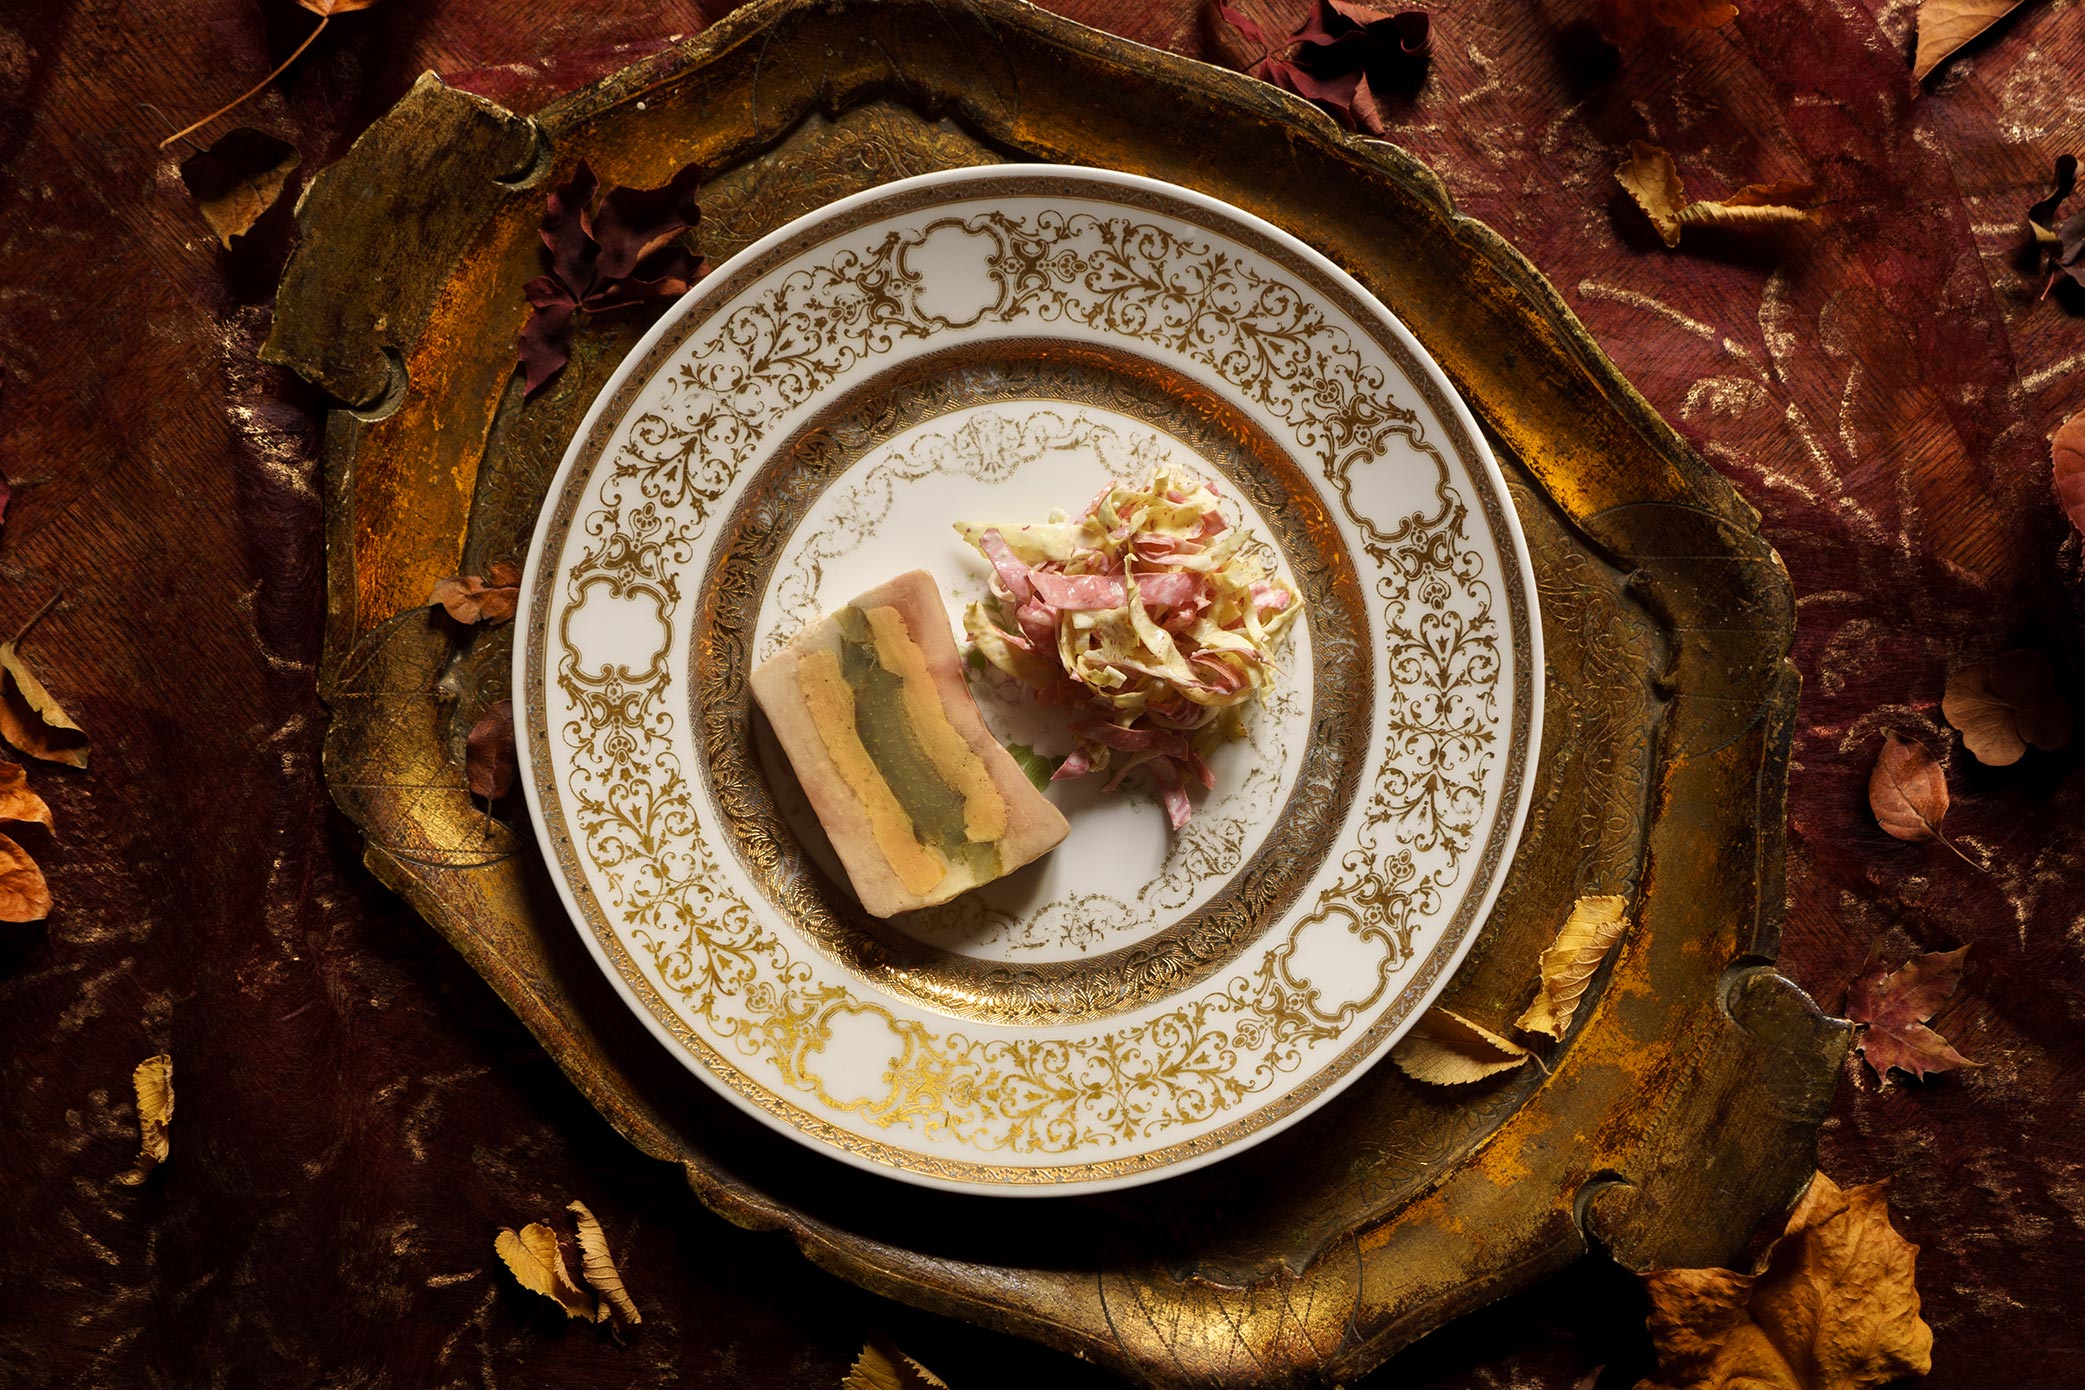 Marbré de poule faisane au foie gras et aux artichauts